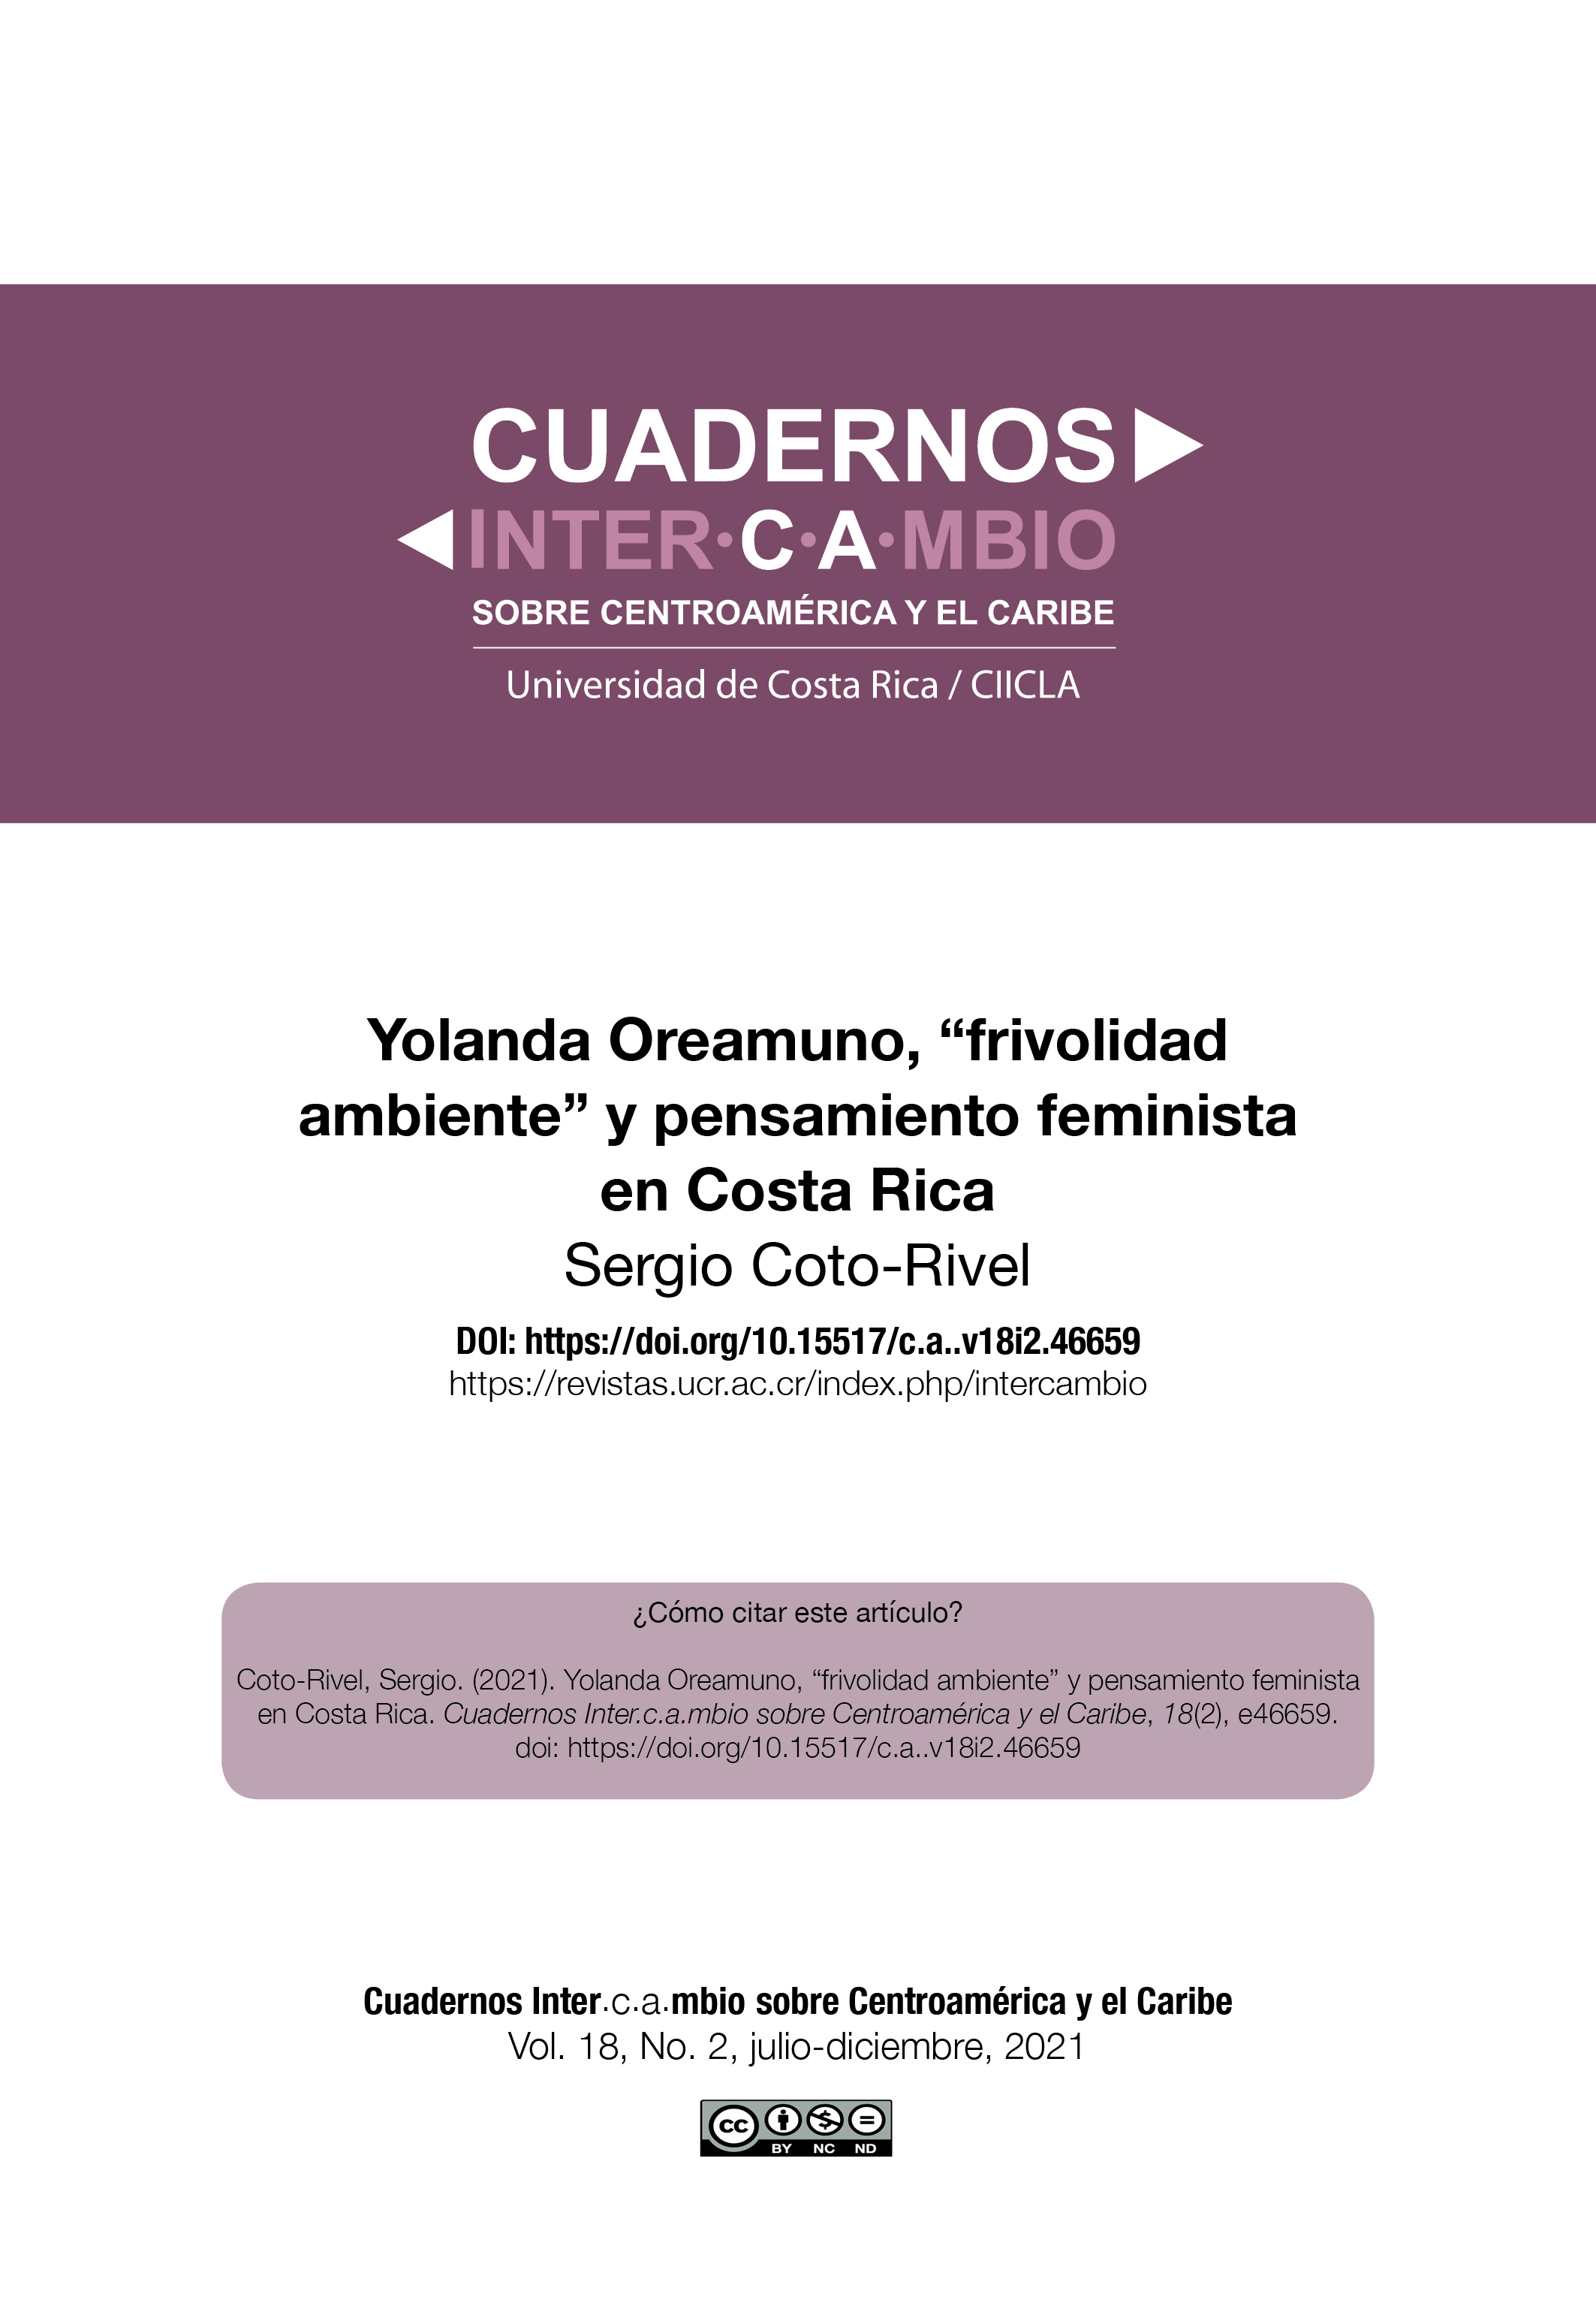 Vista de Yolanda Oreamuno, “frivolidad ambiente” y pensamiento feminista en  Costa Rica | Cuadernos .mbio sobre Centroamérica y el Caribe